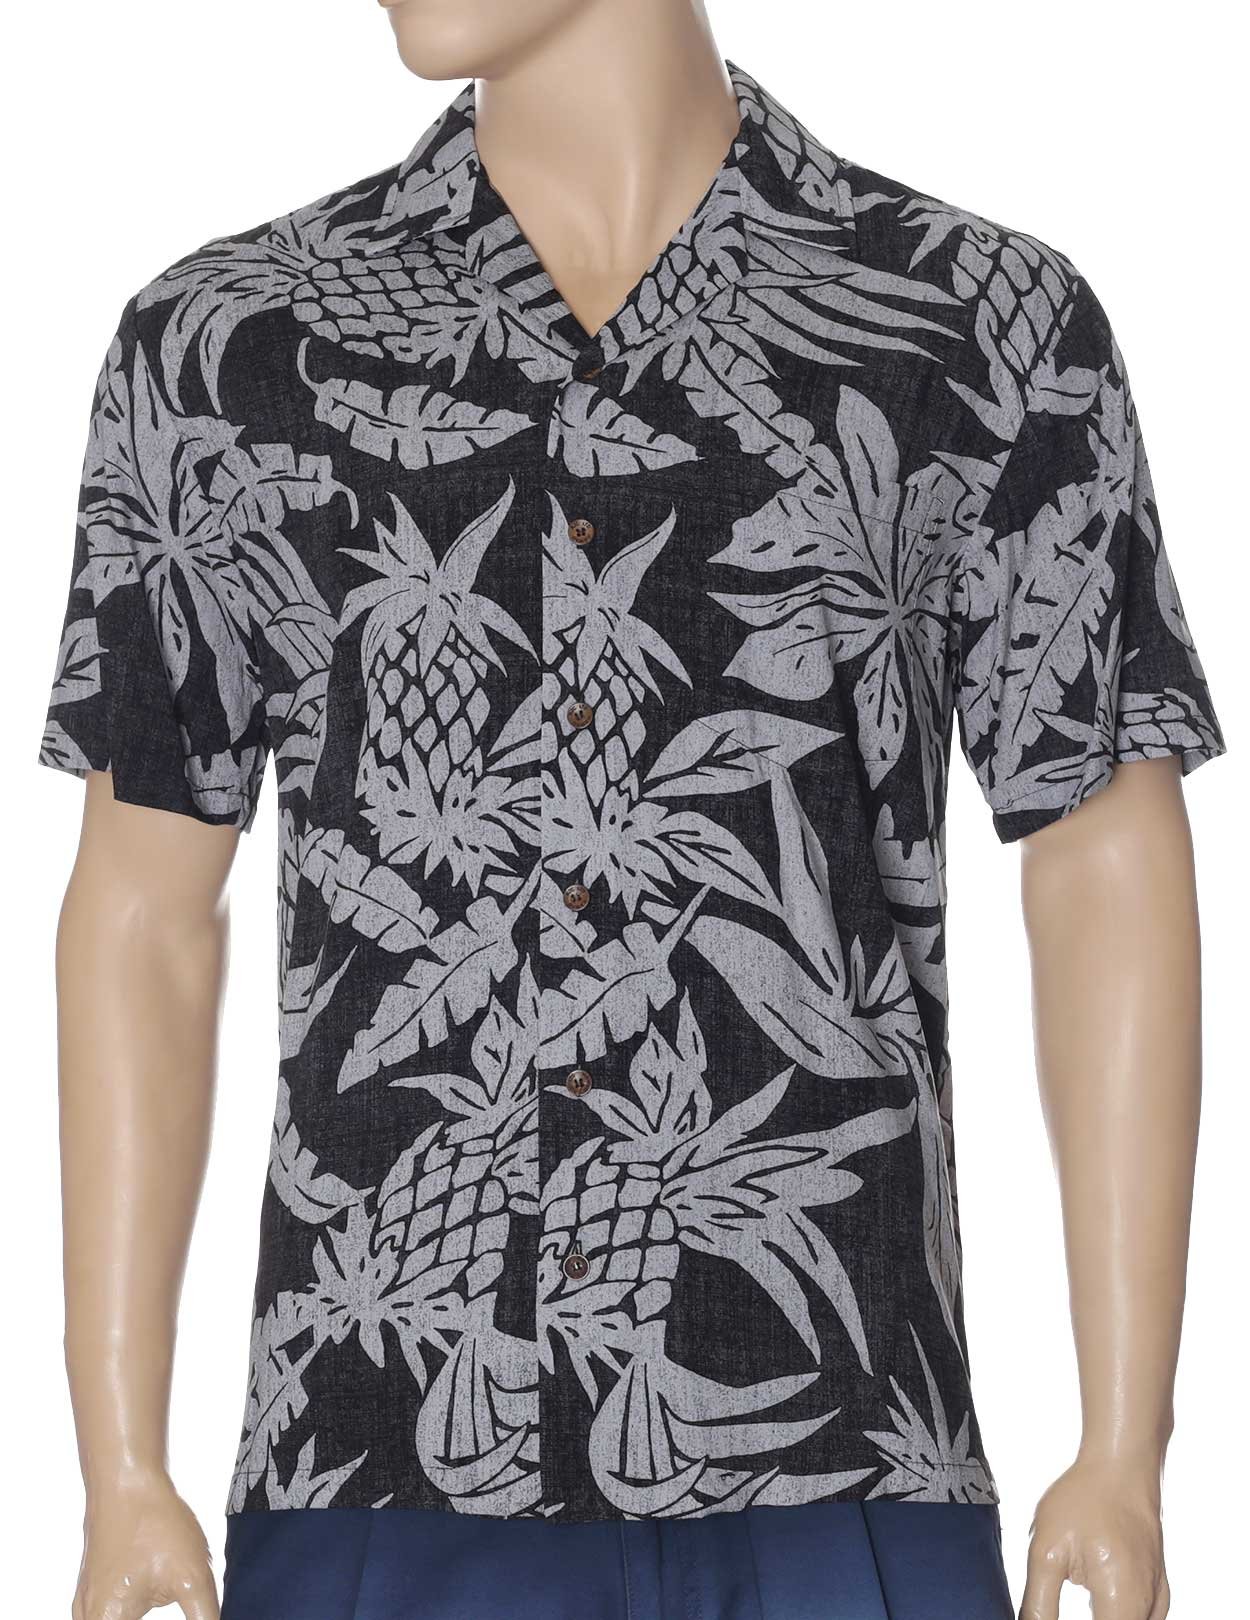 Lanai Pineapple Rayon Aloha Shirt Black